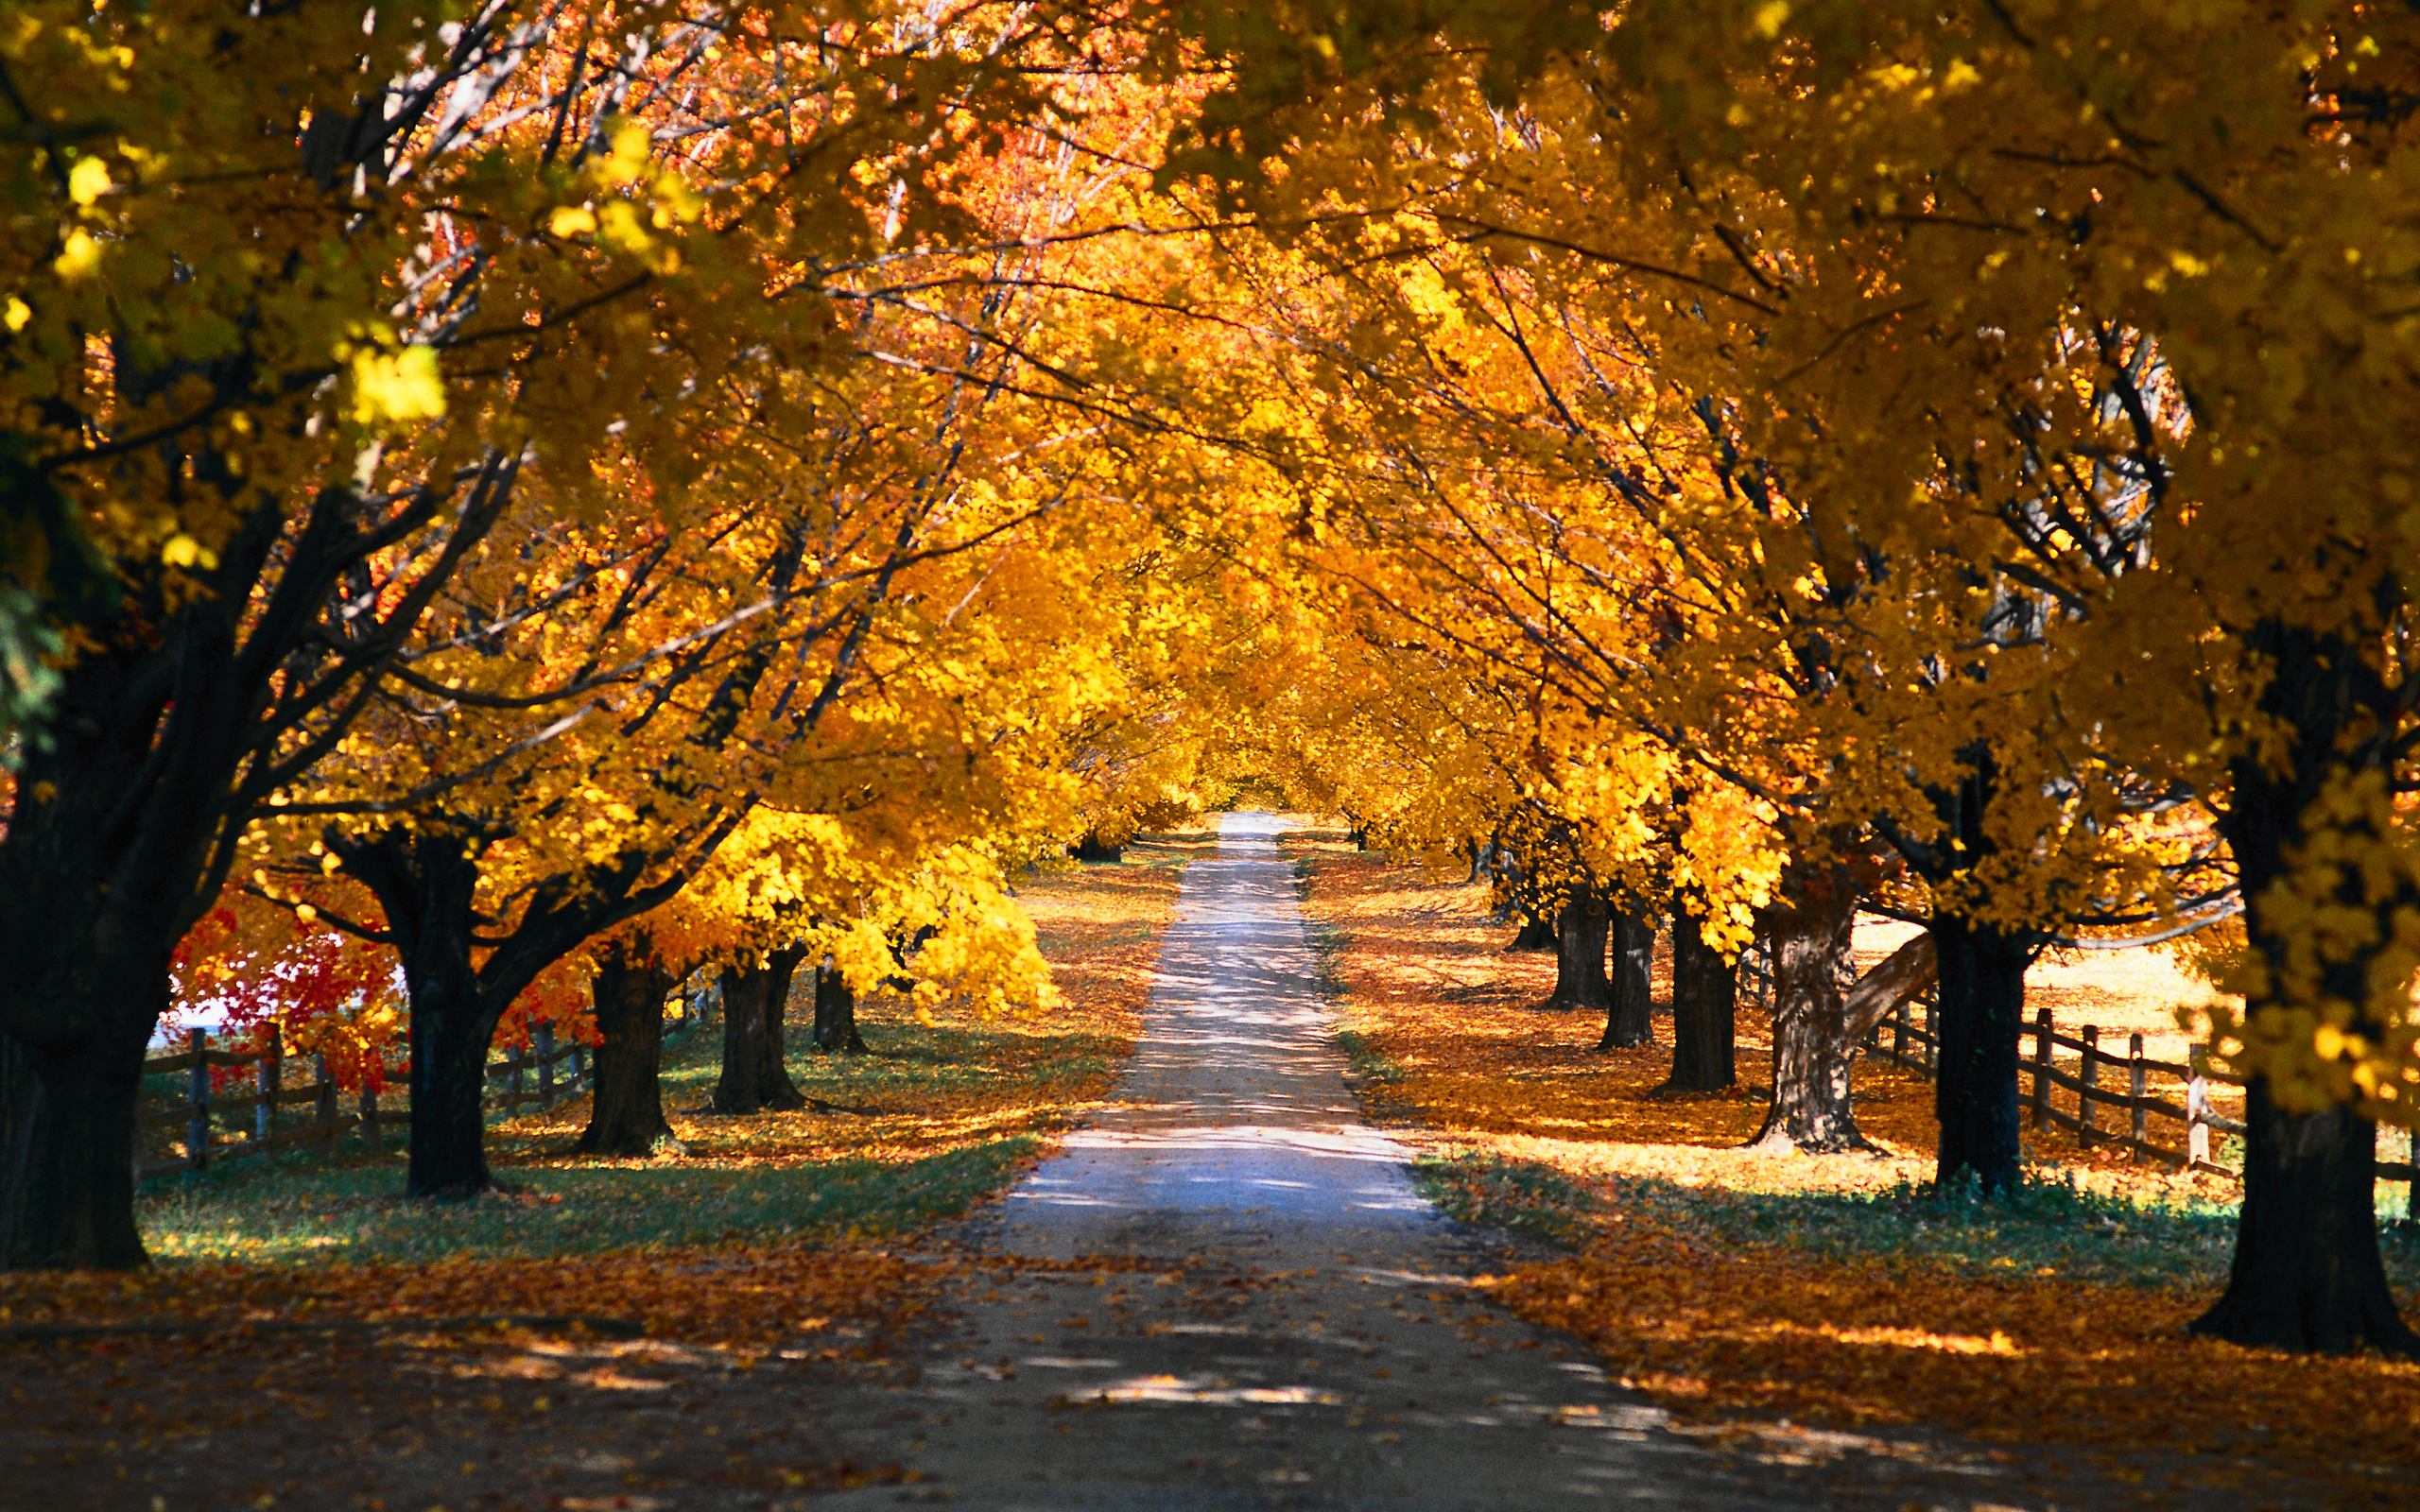 landscapes, trees, autumn, paths - desktop wallpaper